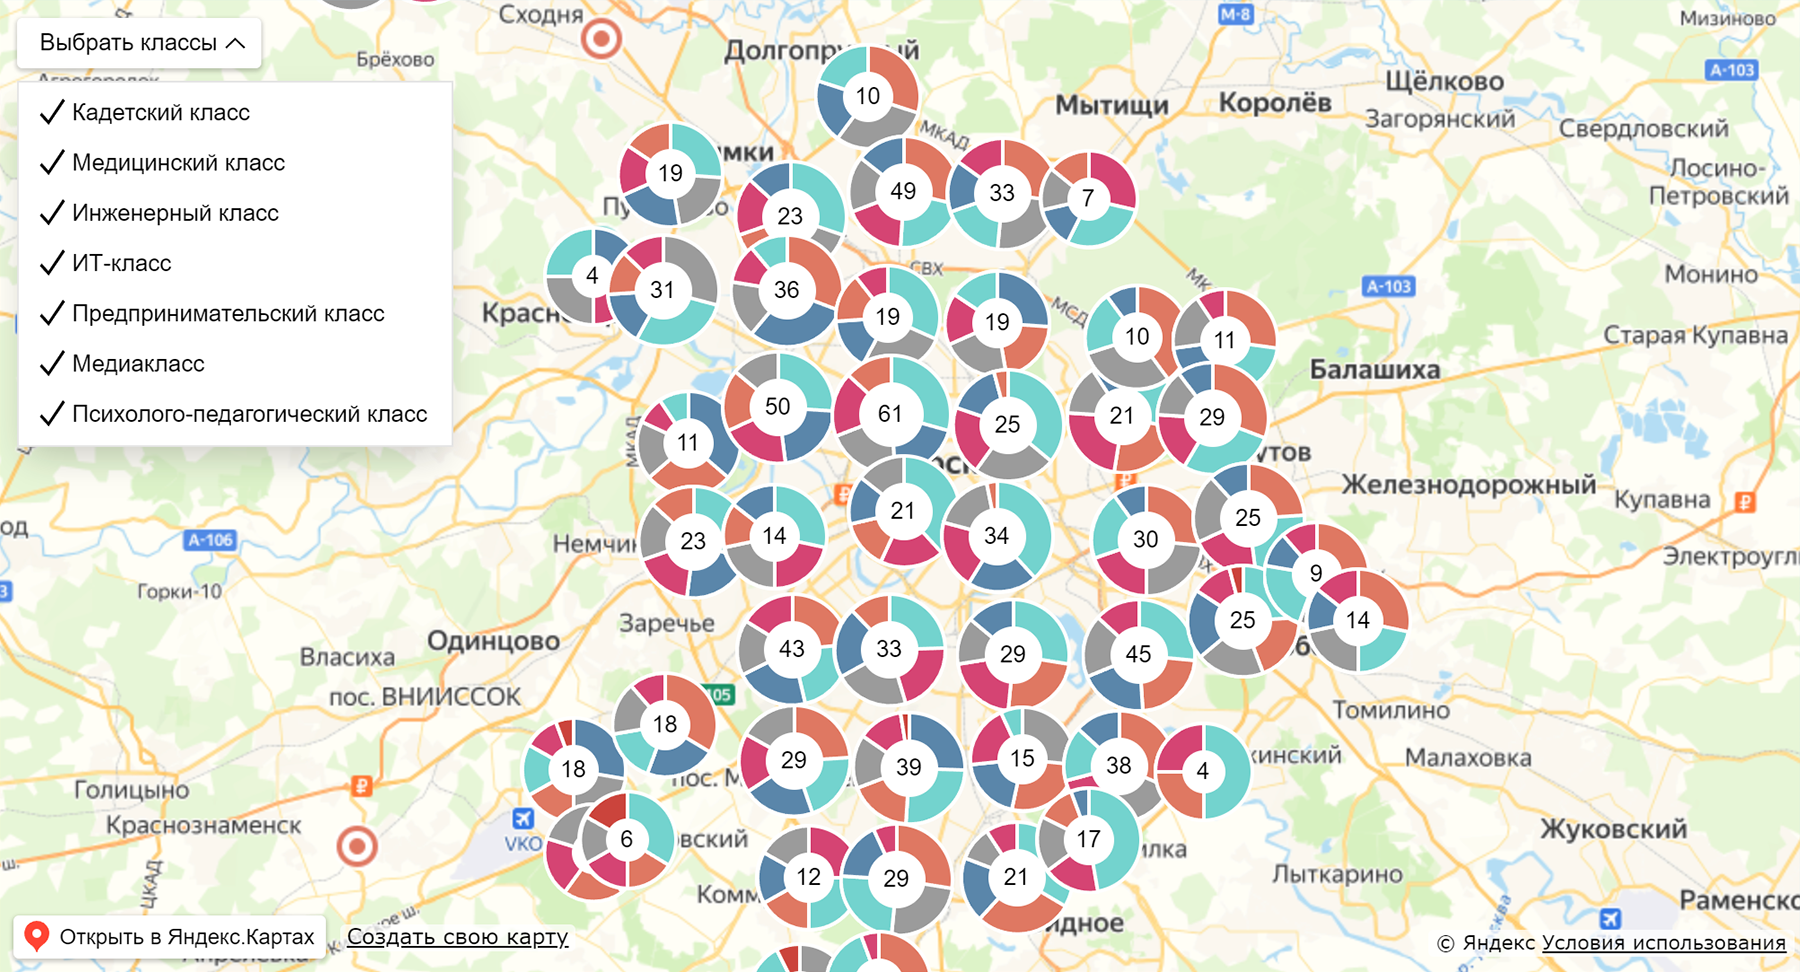 Школы с предпрофессиональными классами расположены в разных районах Москвы. На карте их можно отфильтровать по конкретному направлению. Источник: shkolamoskva.ru